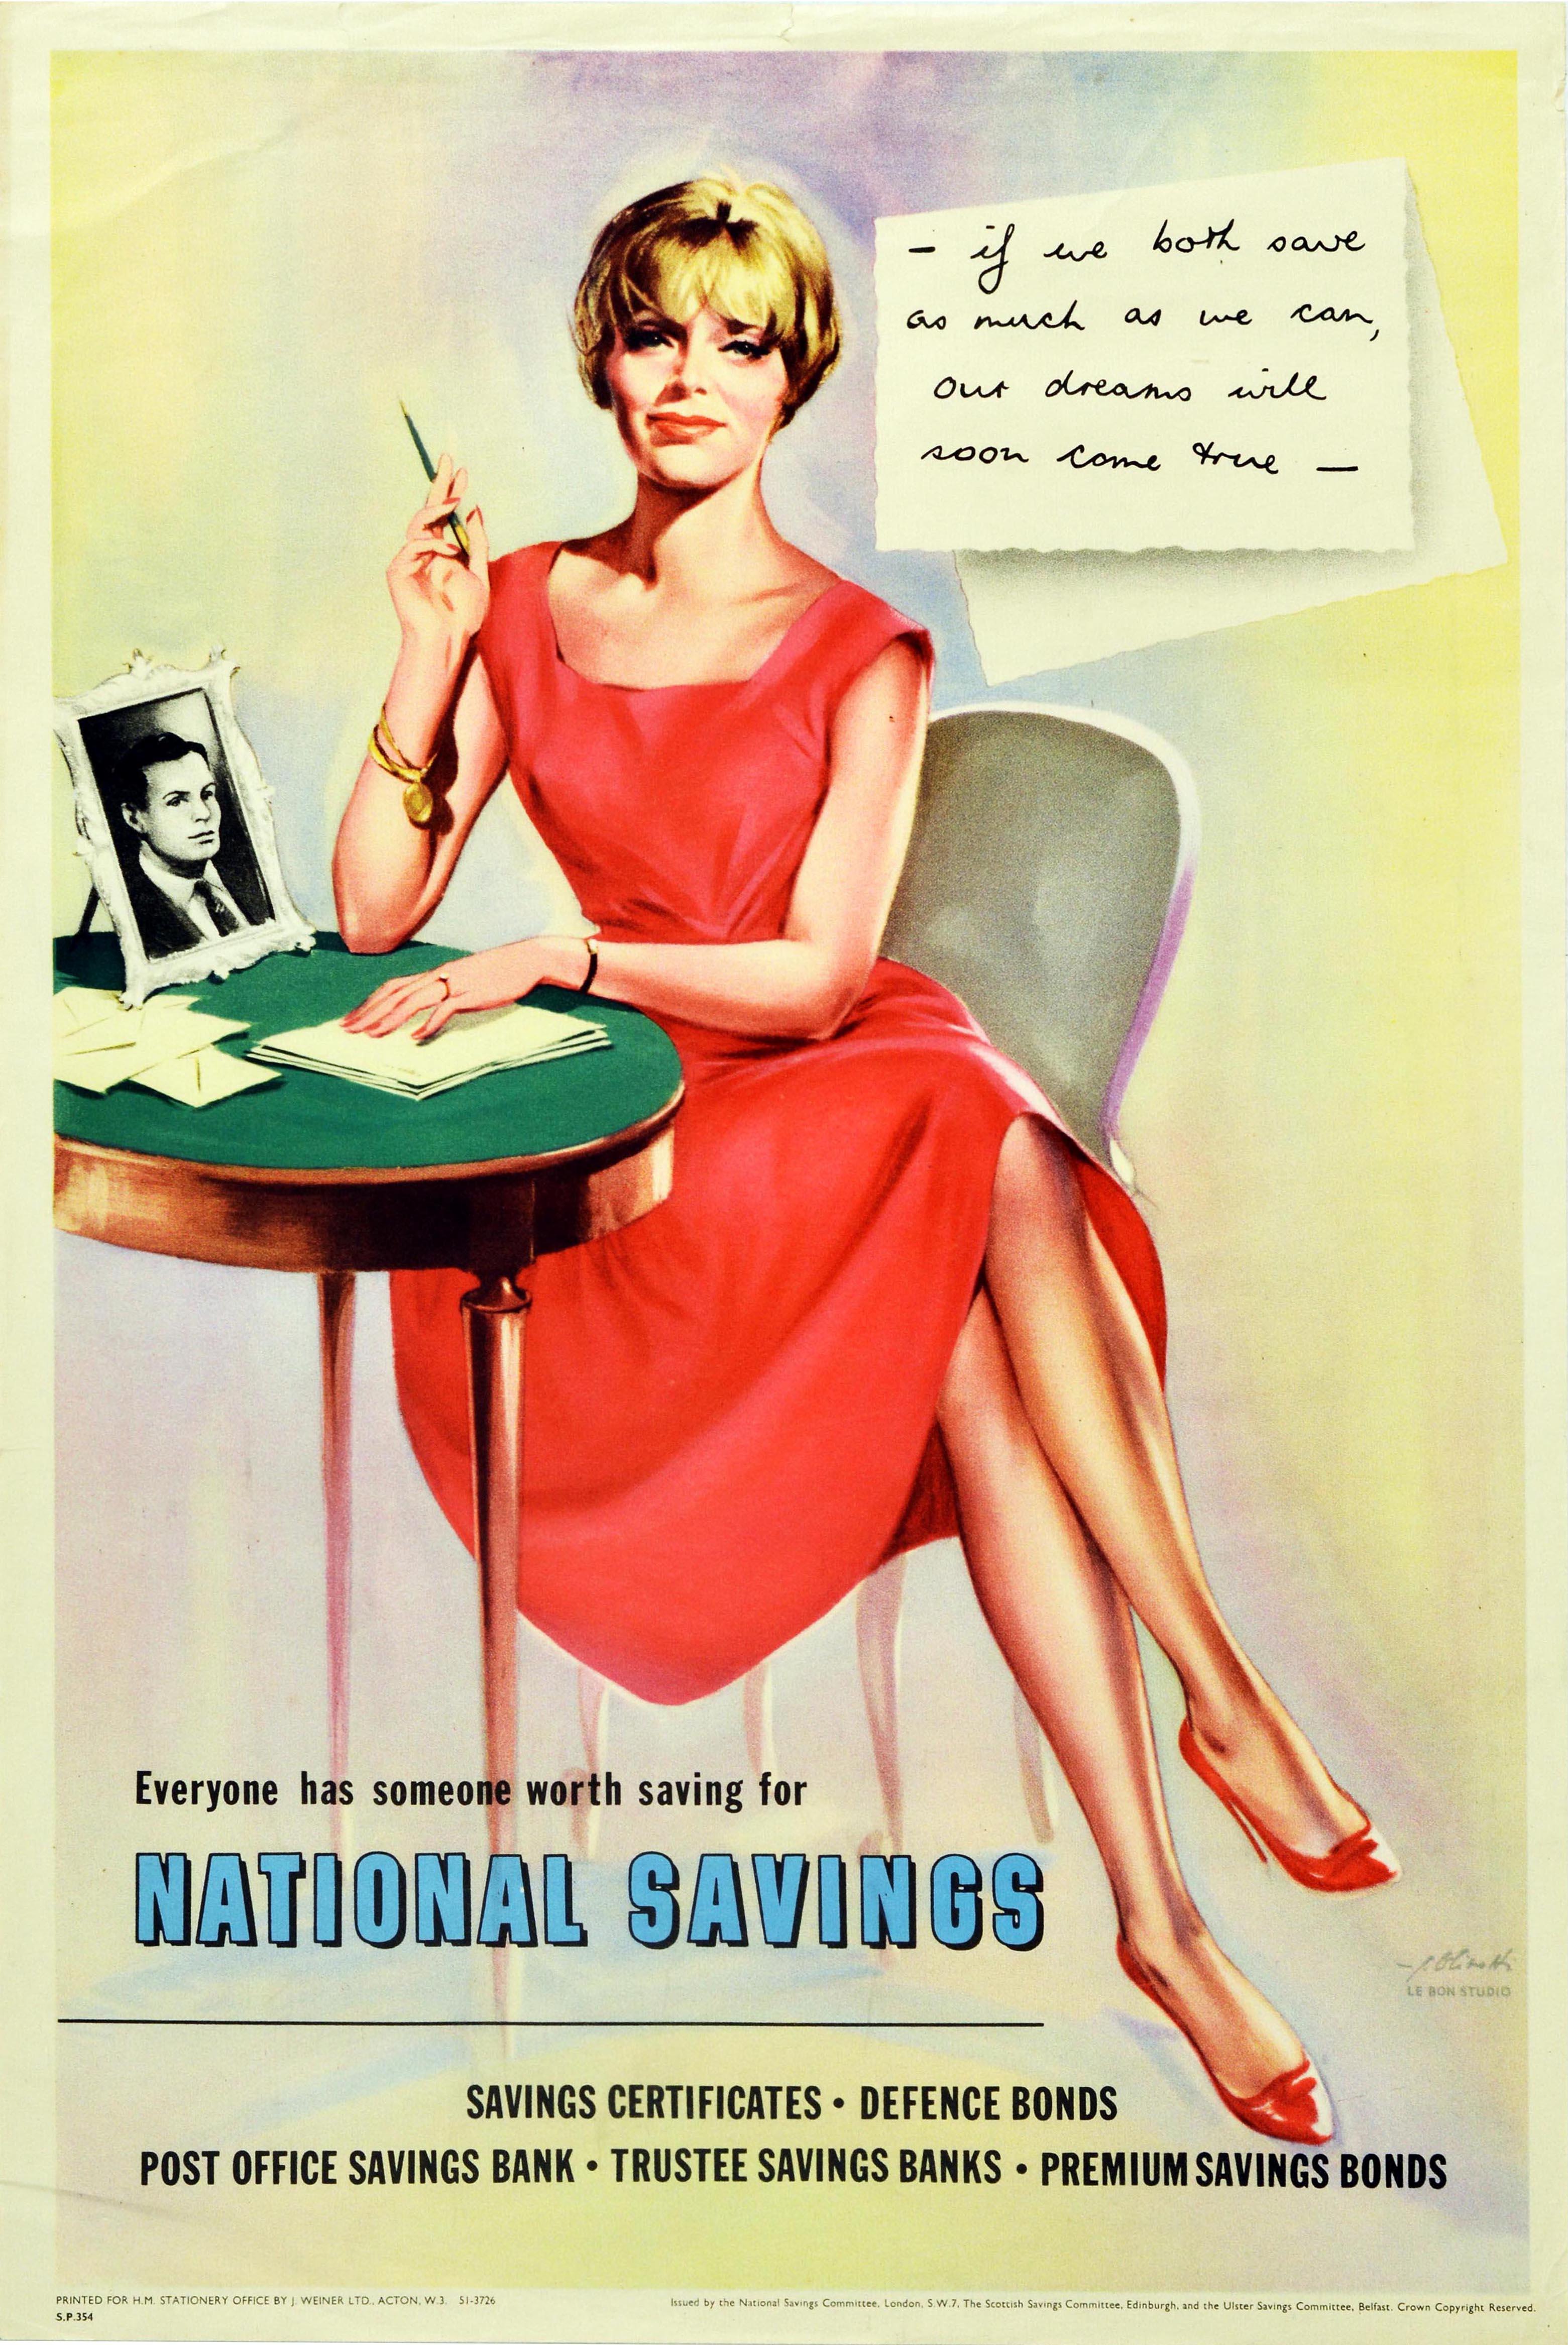 Affiche de propagande vintage originale annonçant l'épargne nationale - Tout le monde a quelqu'un pour qui il vaut la peine d'épargner Épargne nationale - Certificats d'épargne - Obligations de défense - Caisse d'épargne postale - Caisses d'épargne